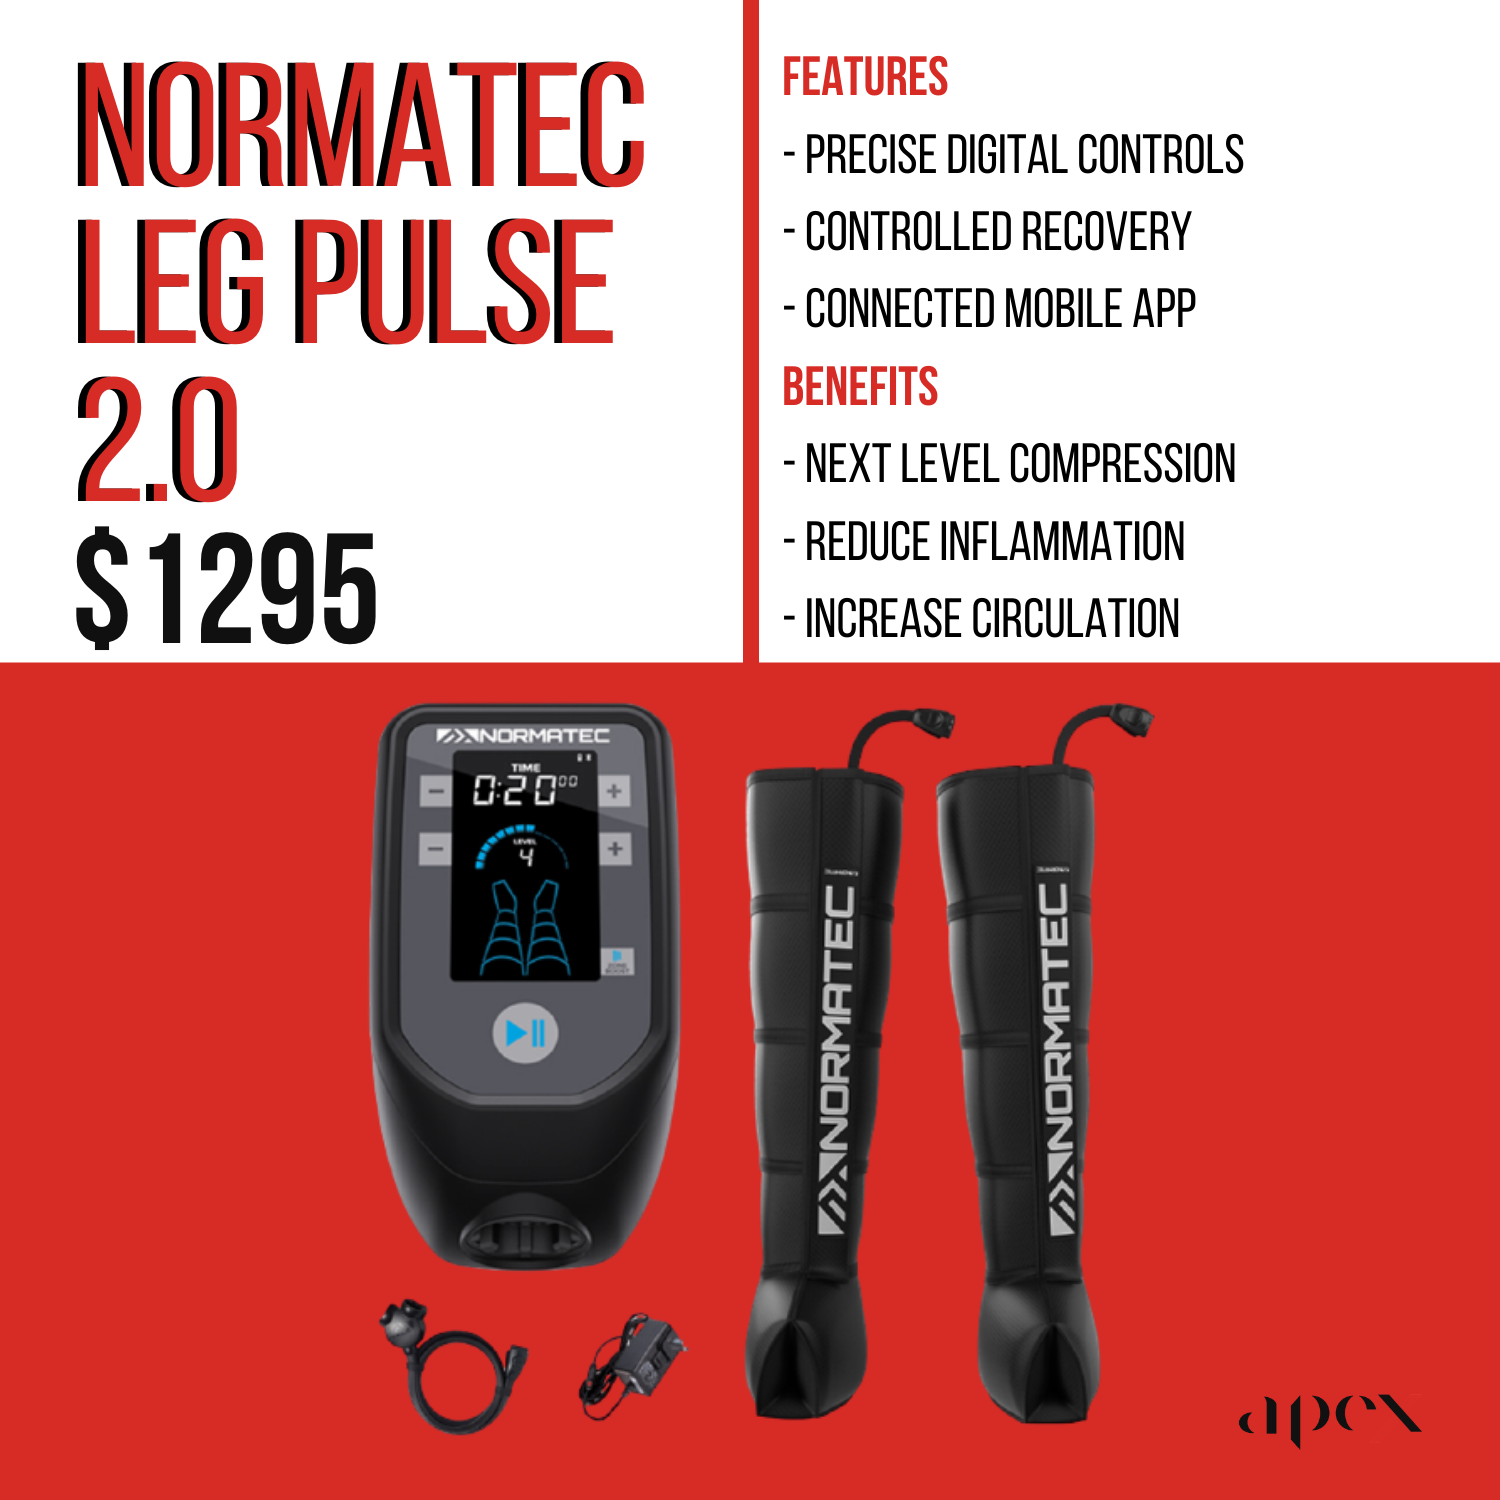 Normatec Leg Pulse2.0.png